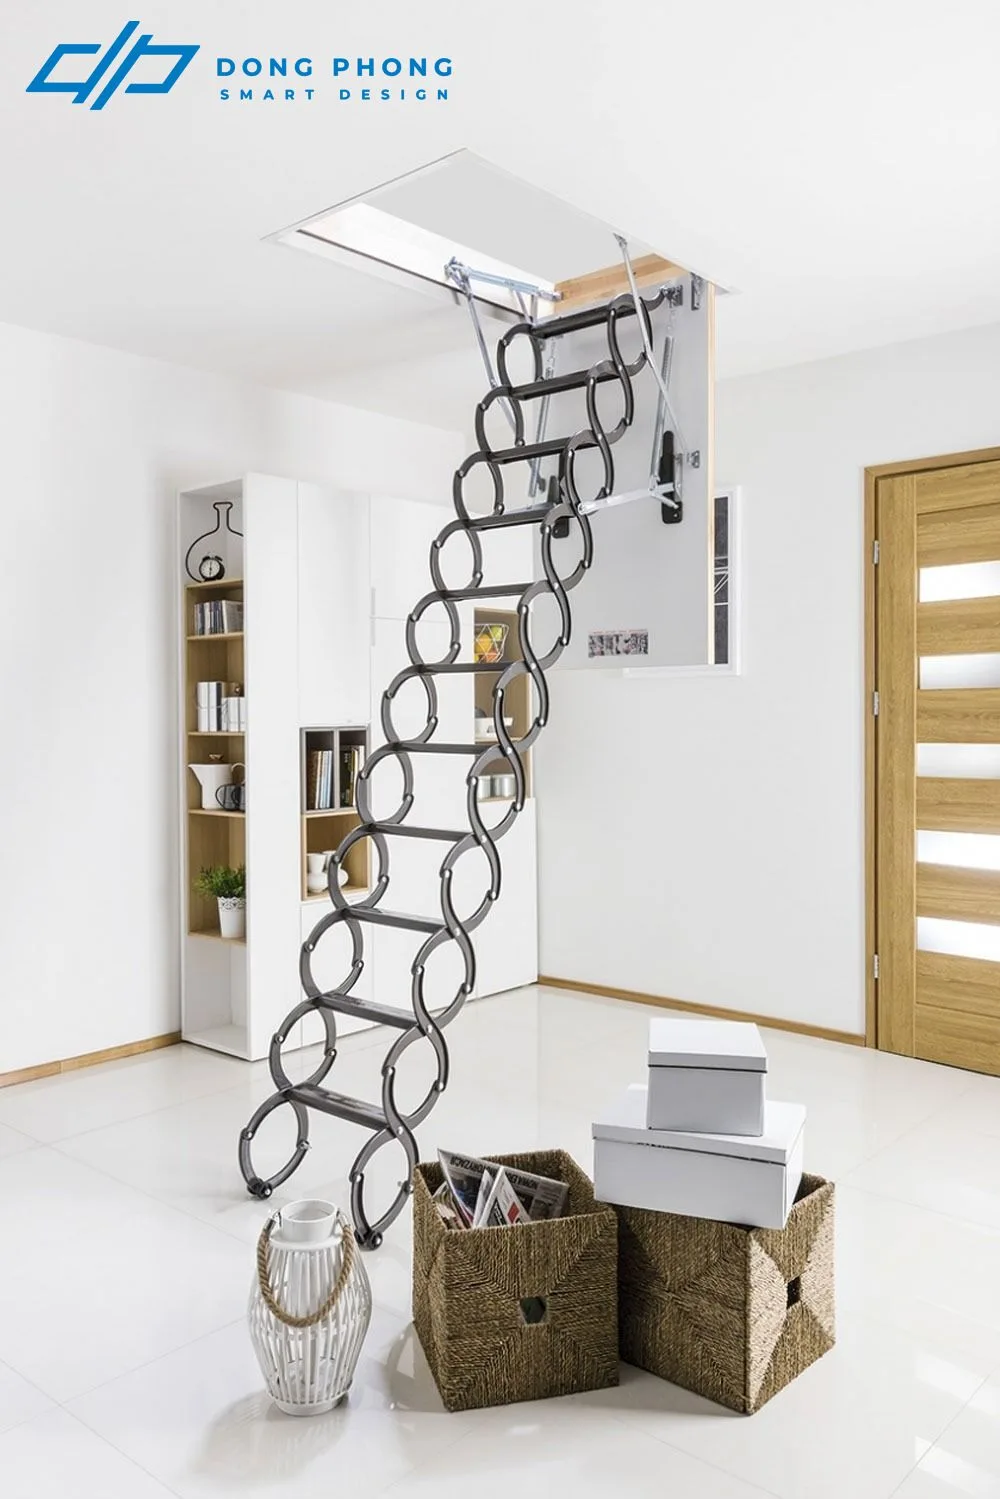 Ý tưởng thiết kế cầu thang thông minh hiện đại cho nhà nhỏ, gác lửng |  Cleanipedia